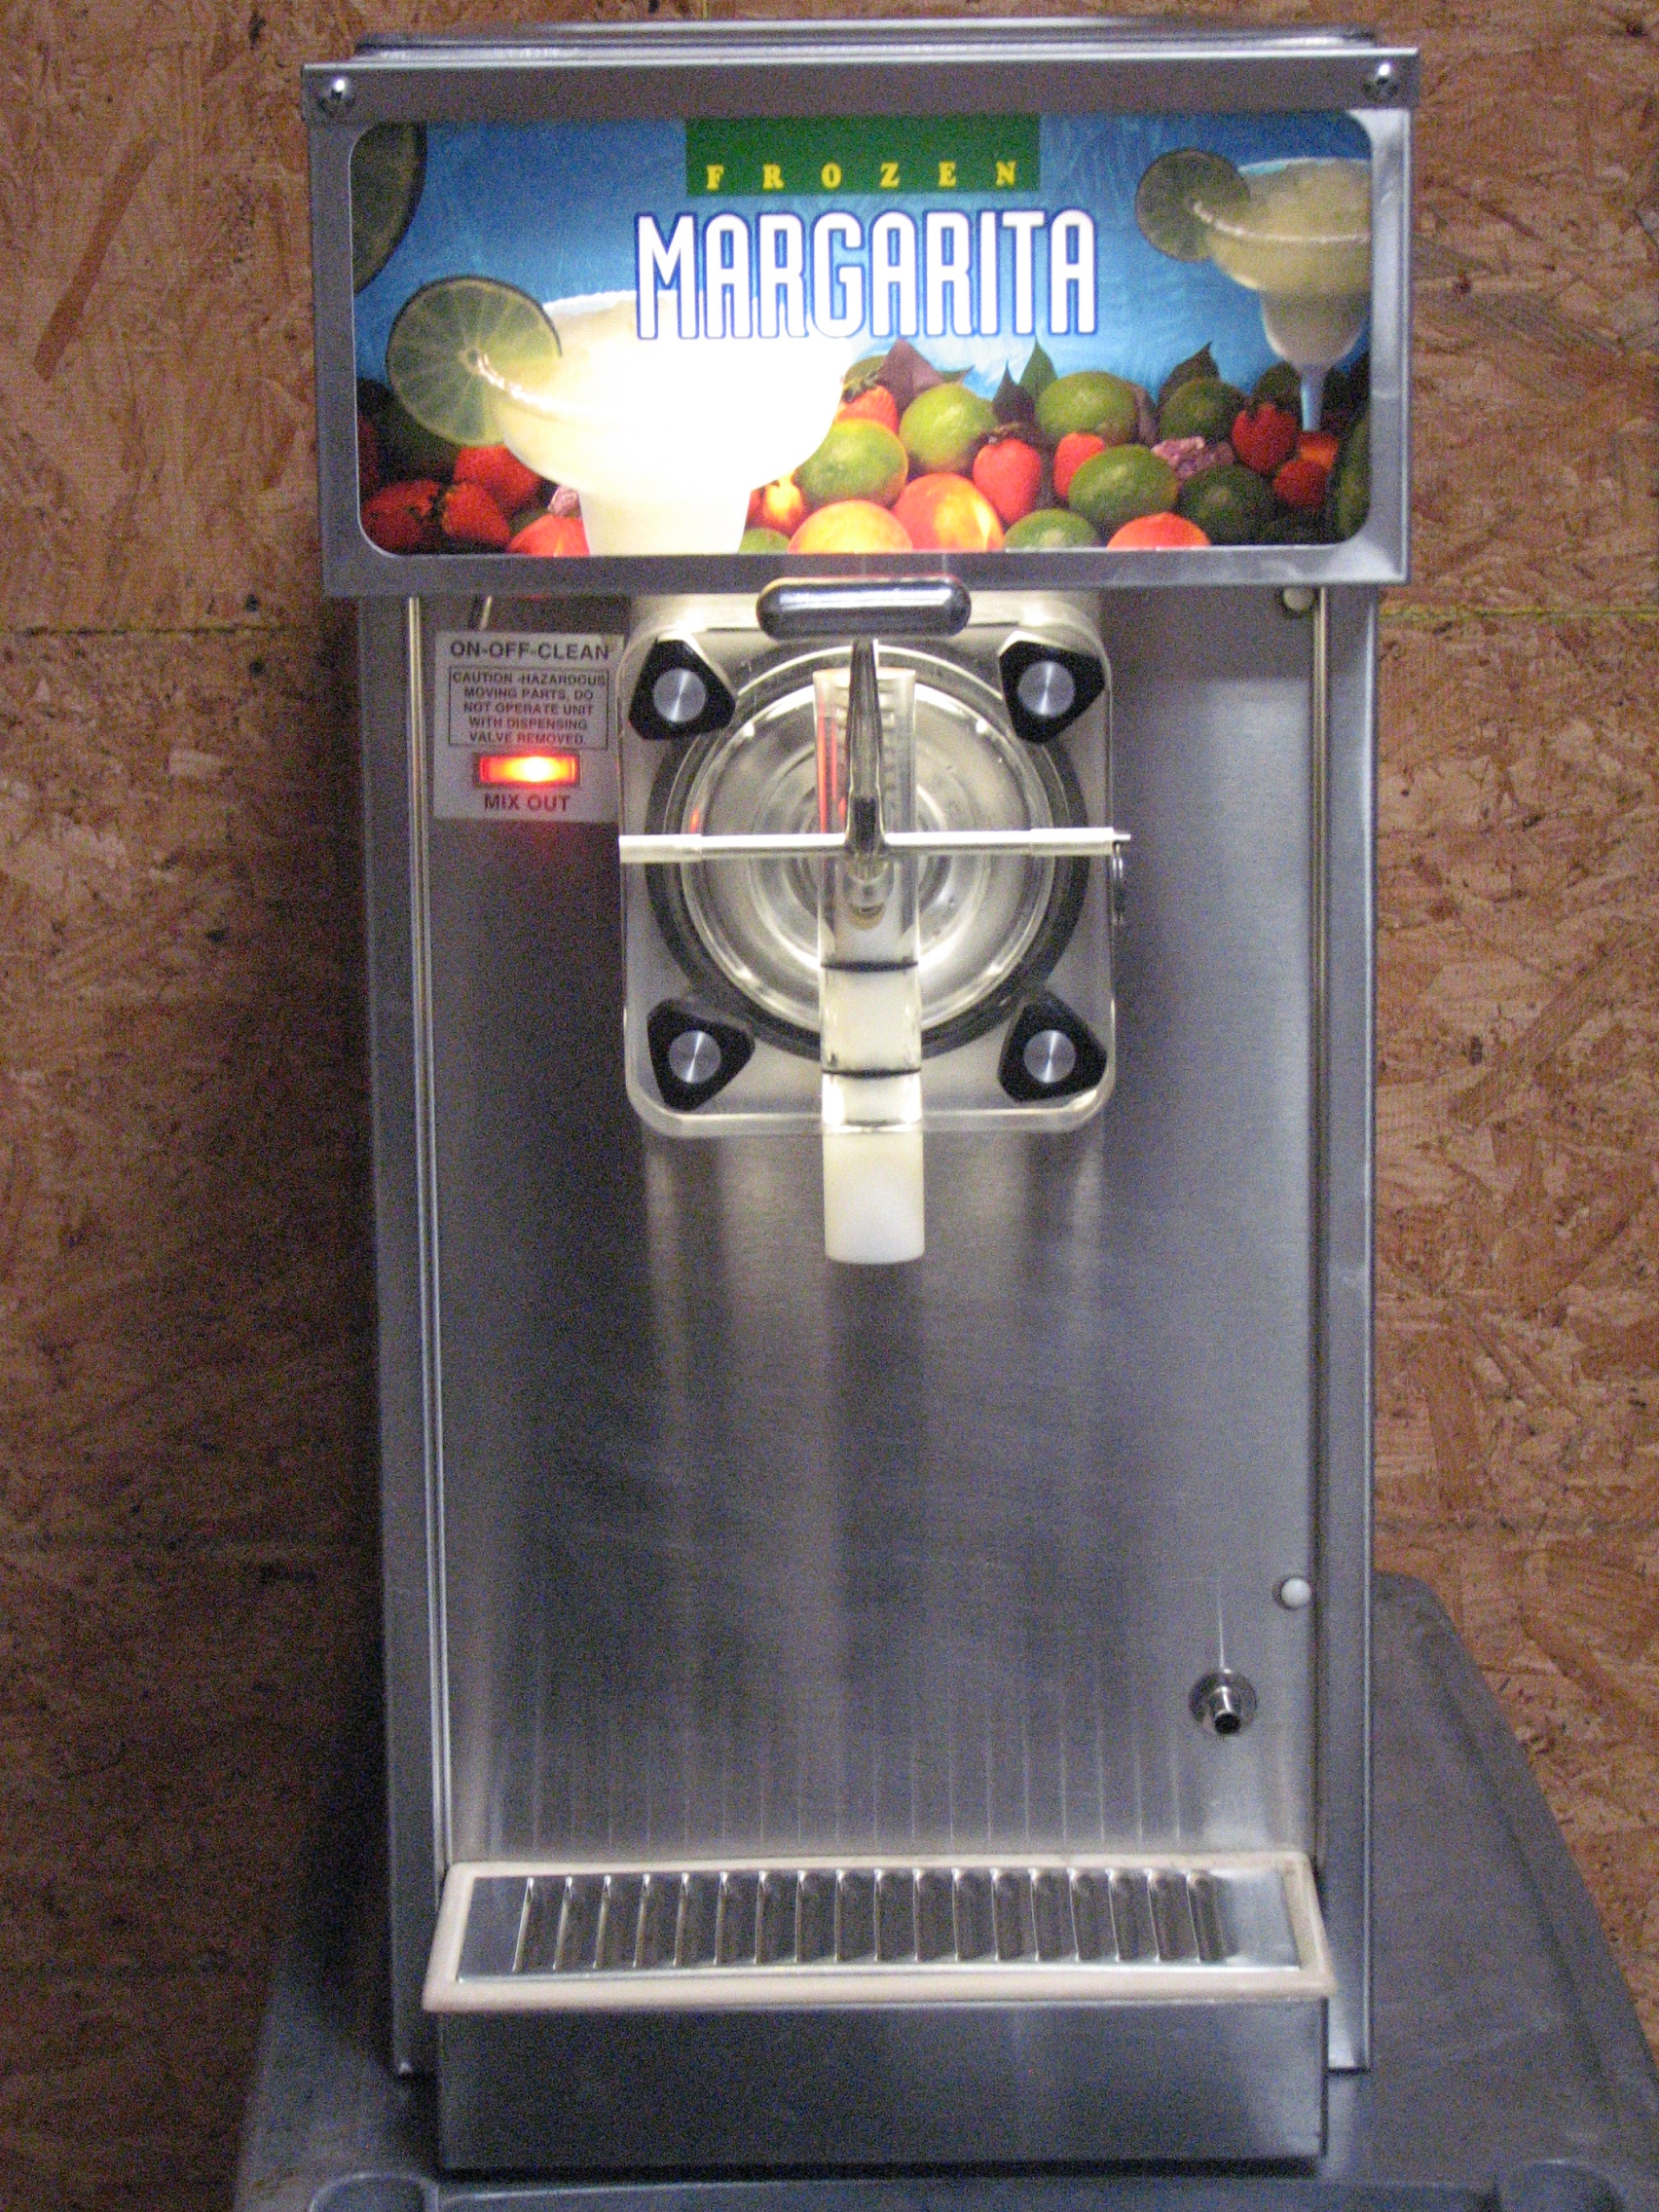 Used Grindmaster 3311 Margarita machine - frozen drink machine